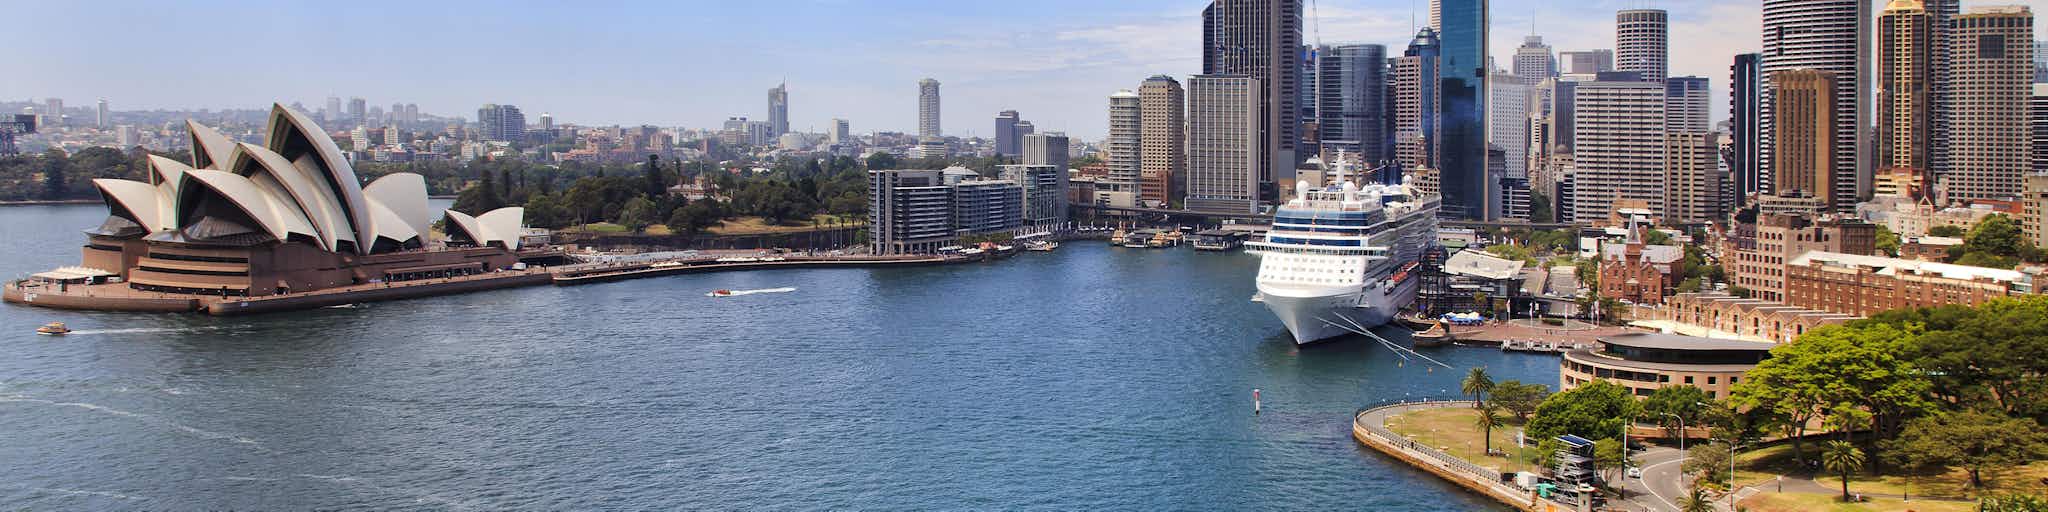 sydney port cruise